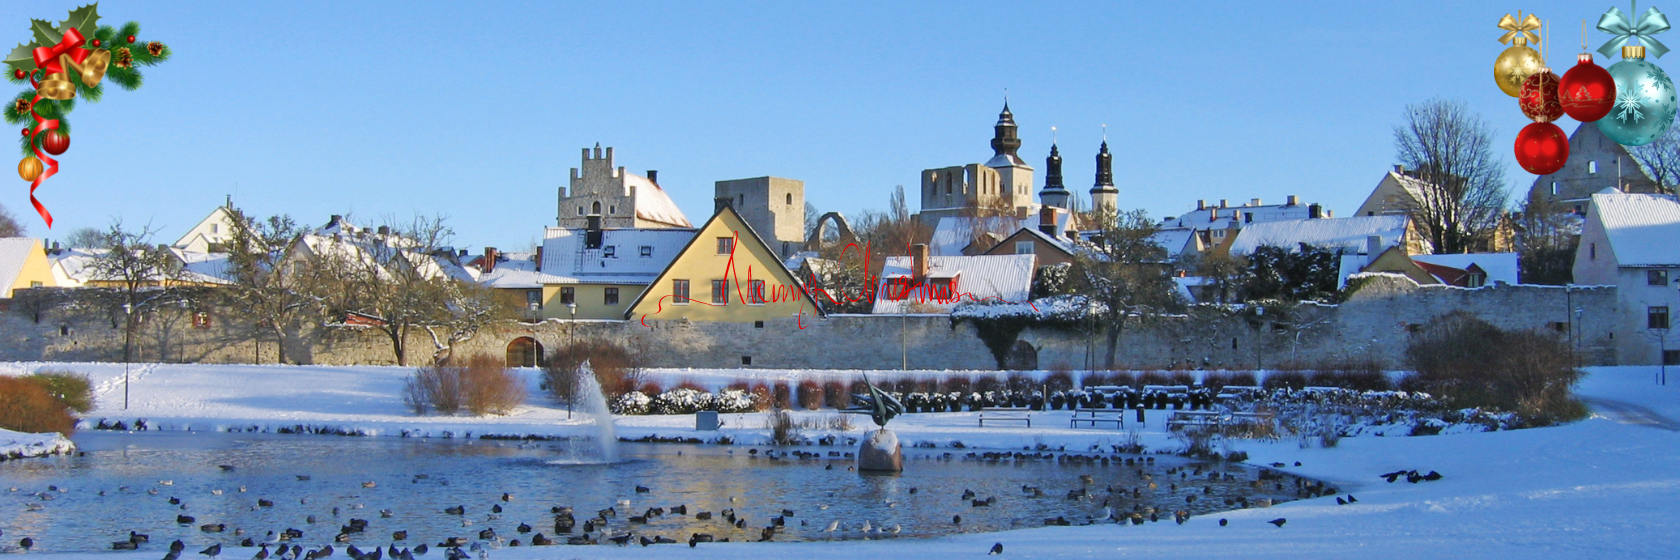 Adventskryssning till Visby med Cinderella